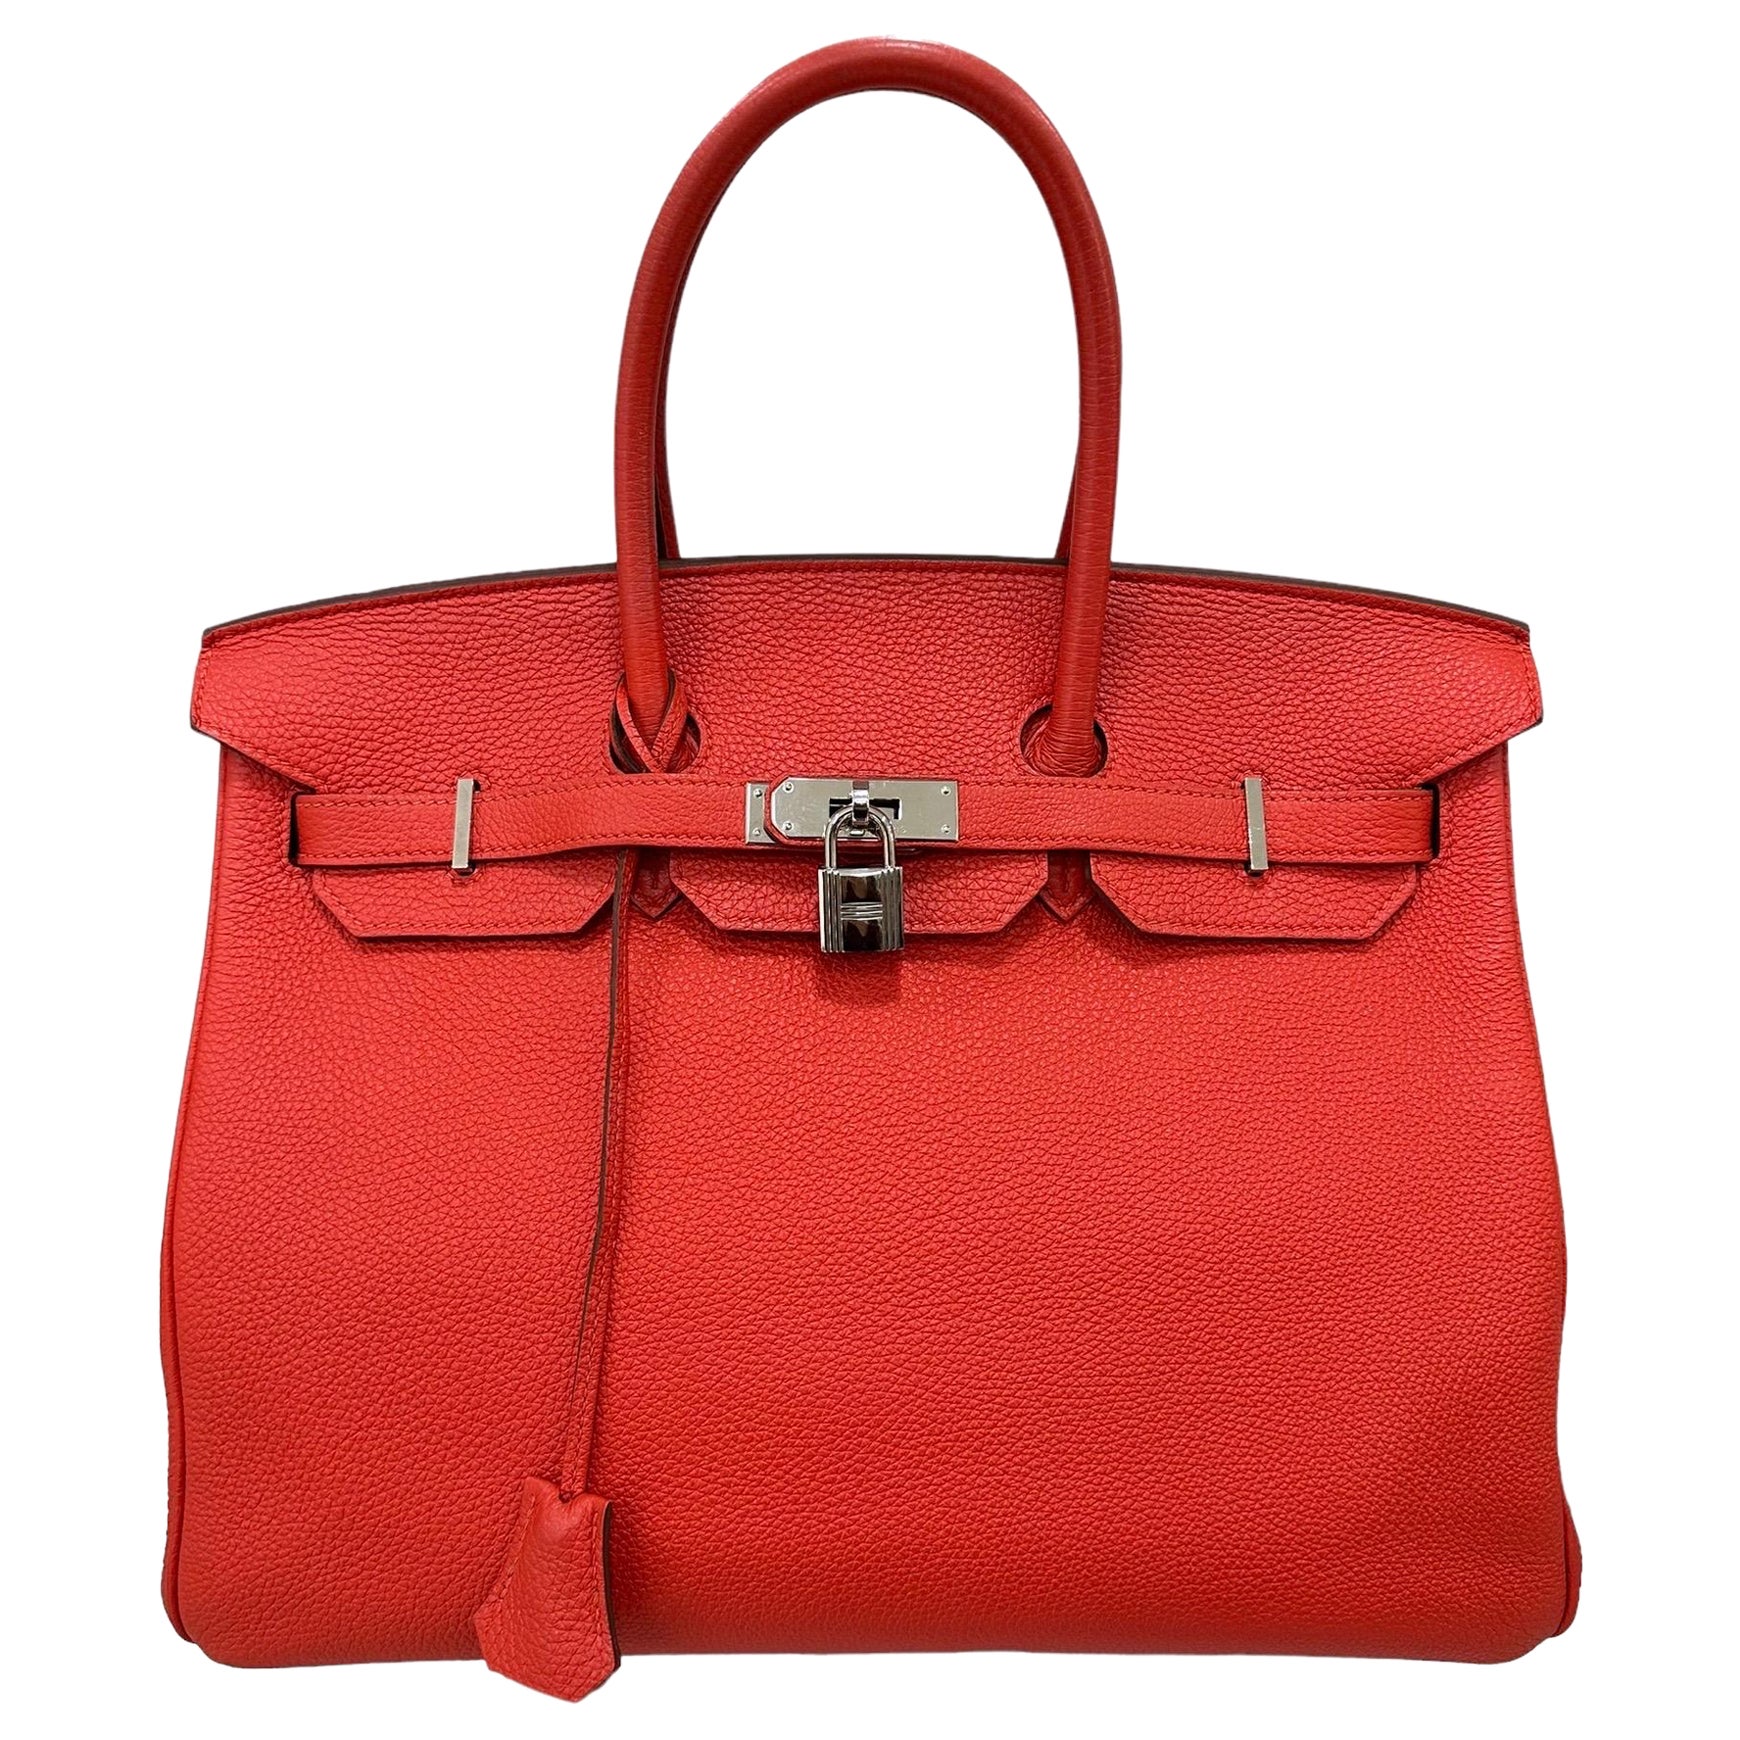 2011 Hermès Birkin 35 Togo Leder Rouge Capucine Top Handle Bag